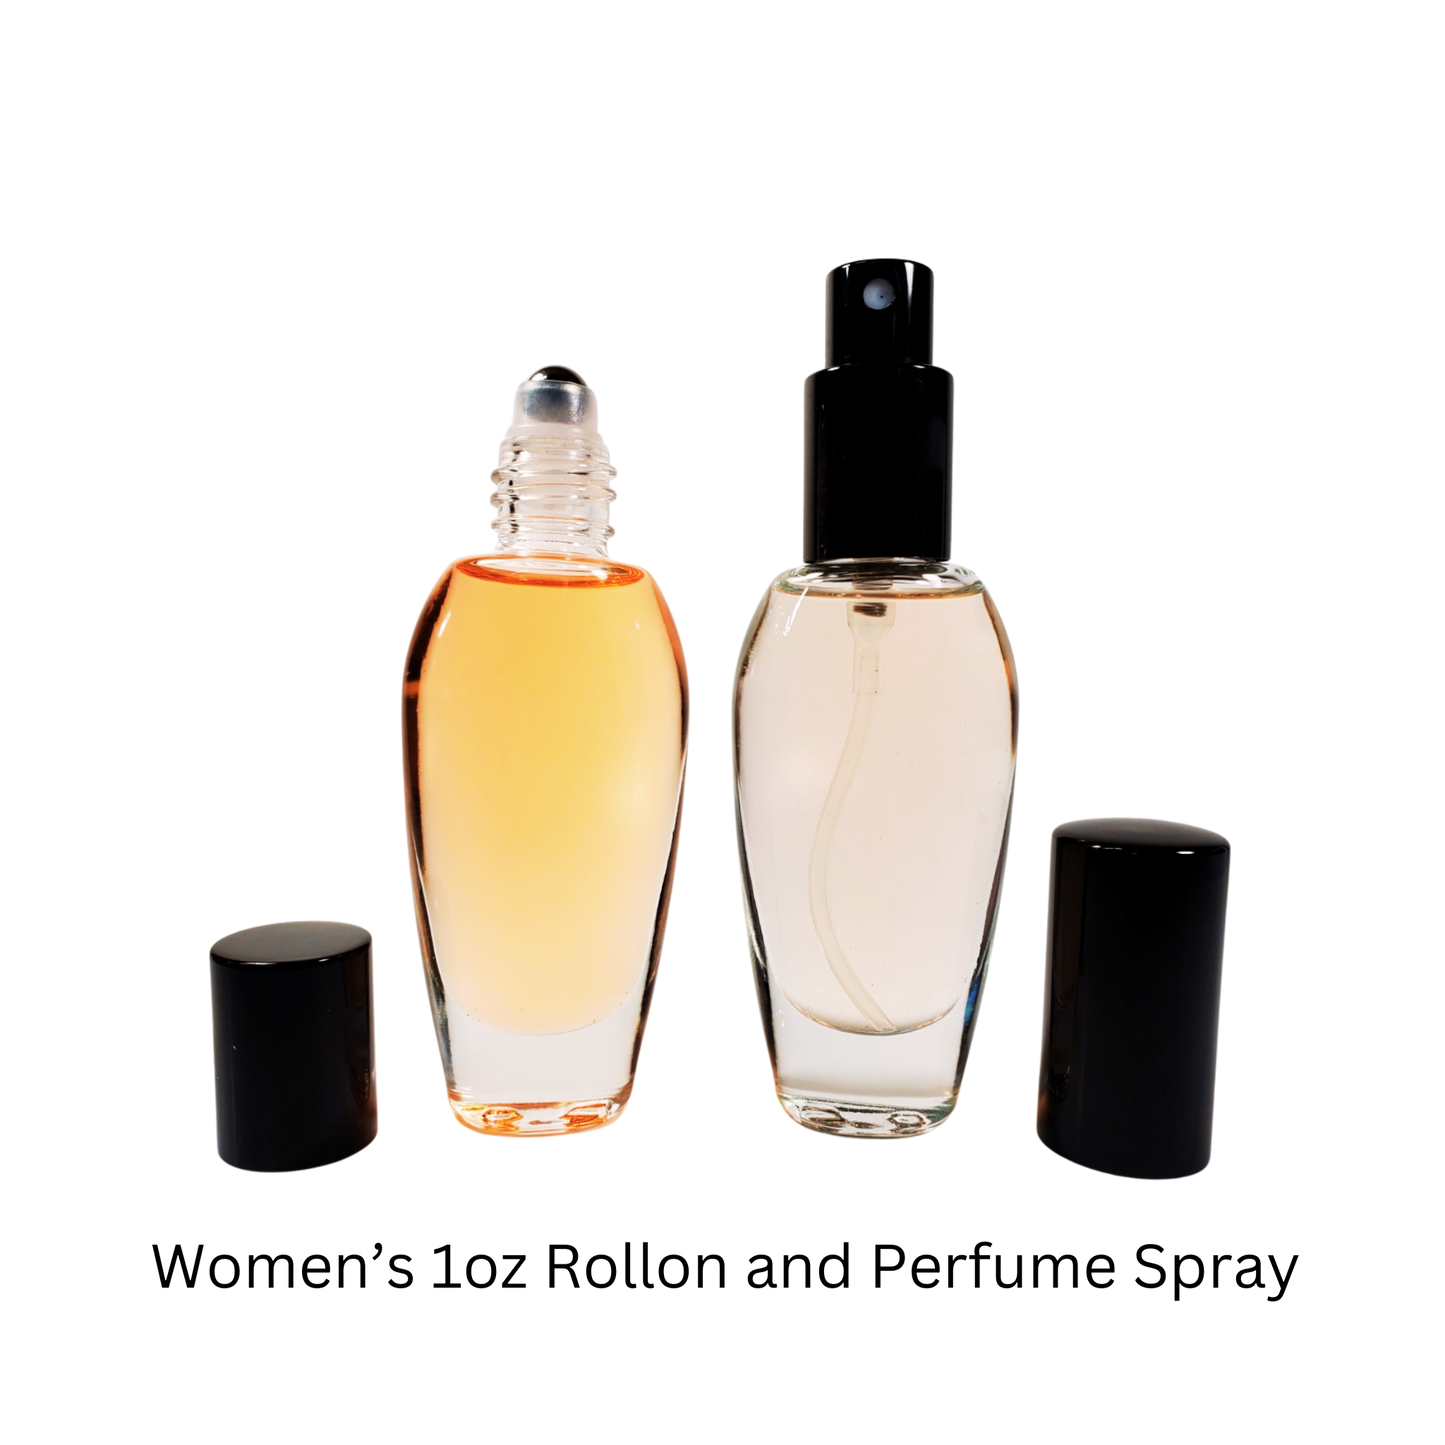 Blanche Type* / Perfume Body Oil / Eau de Parfum